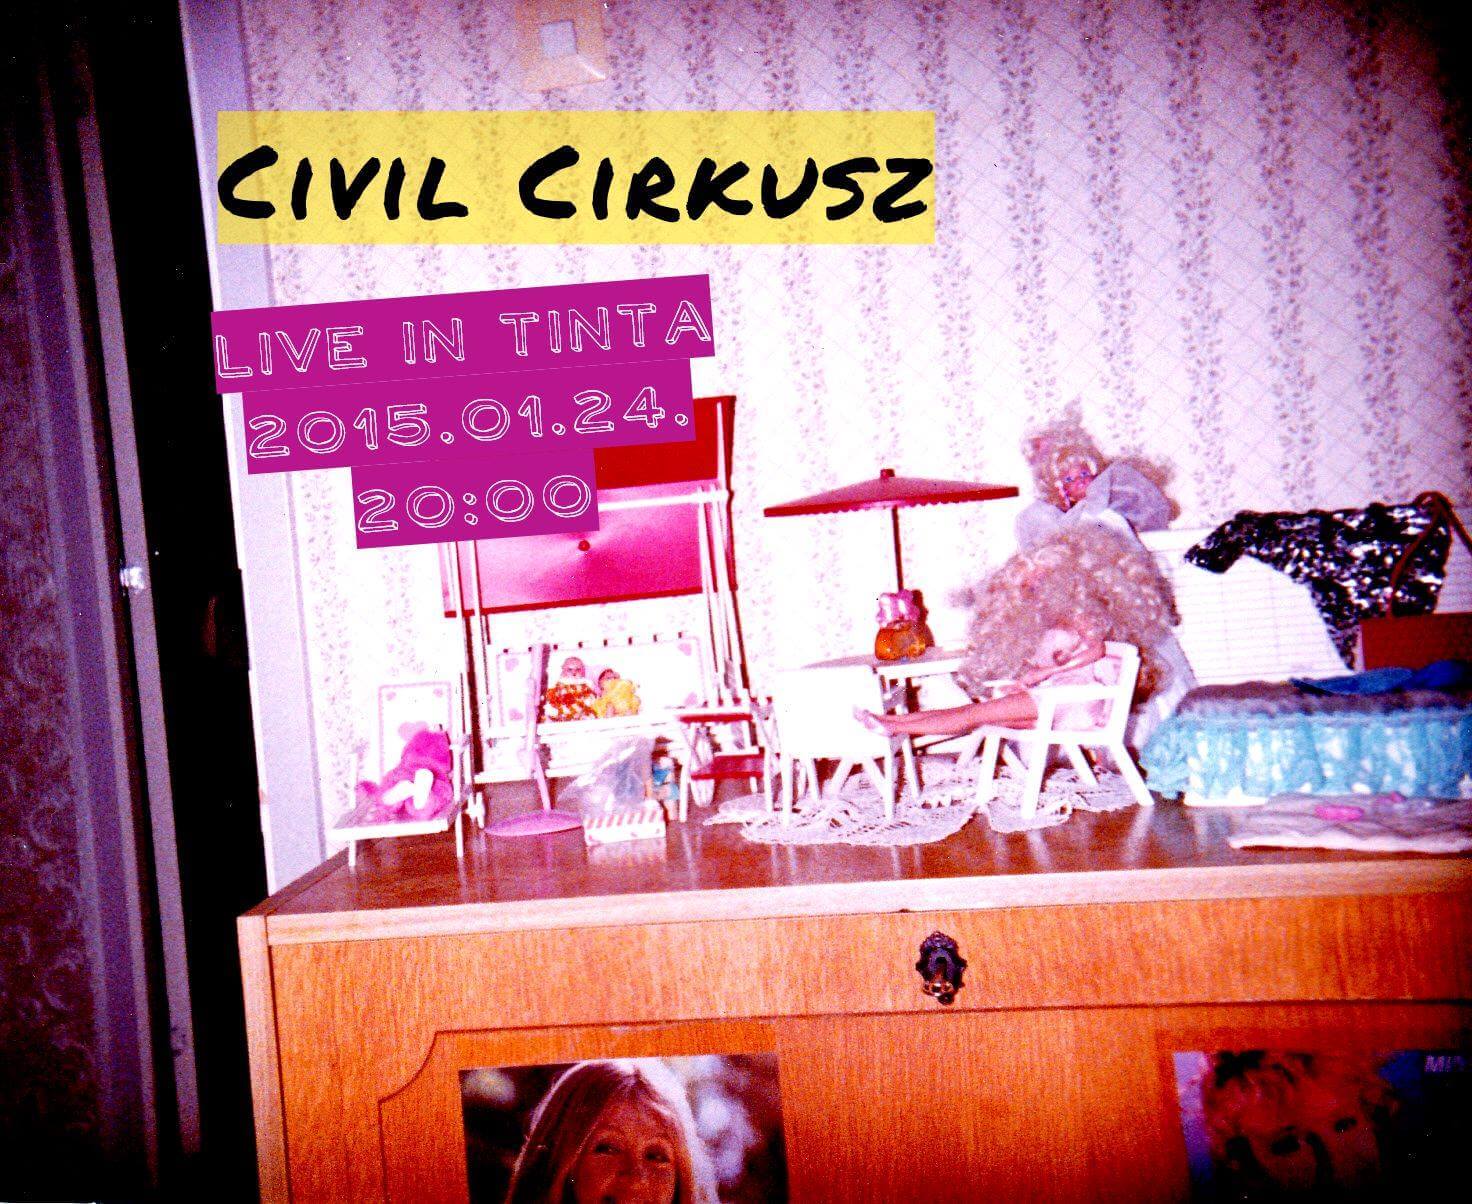 civil cirkusz